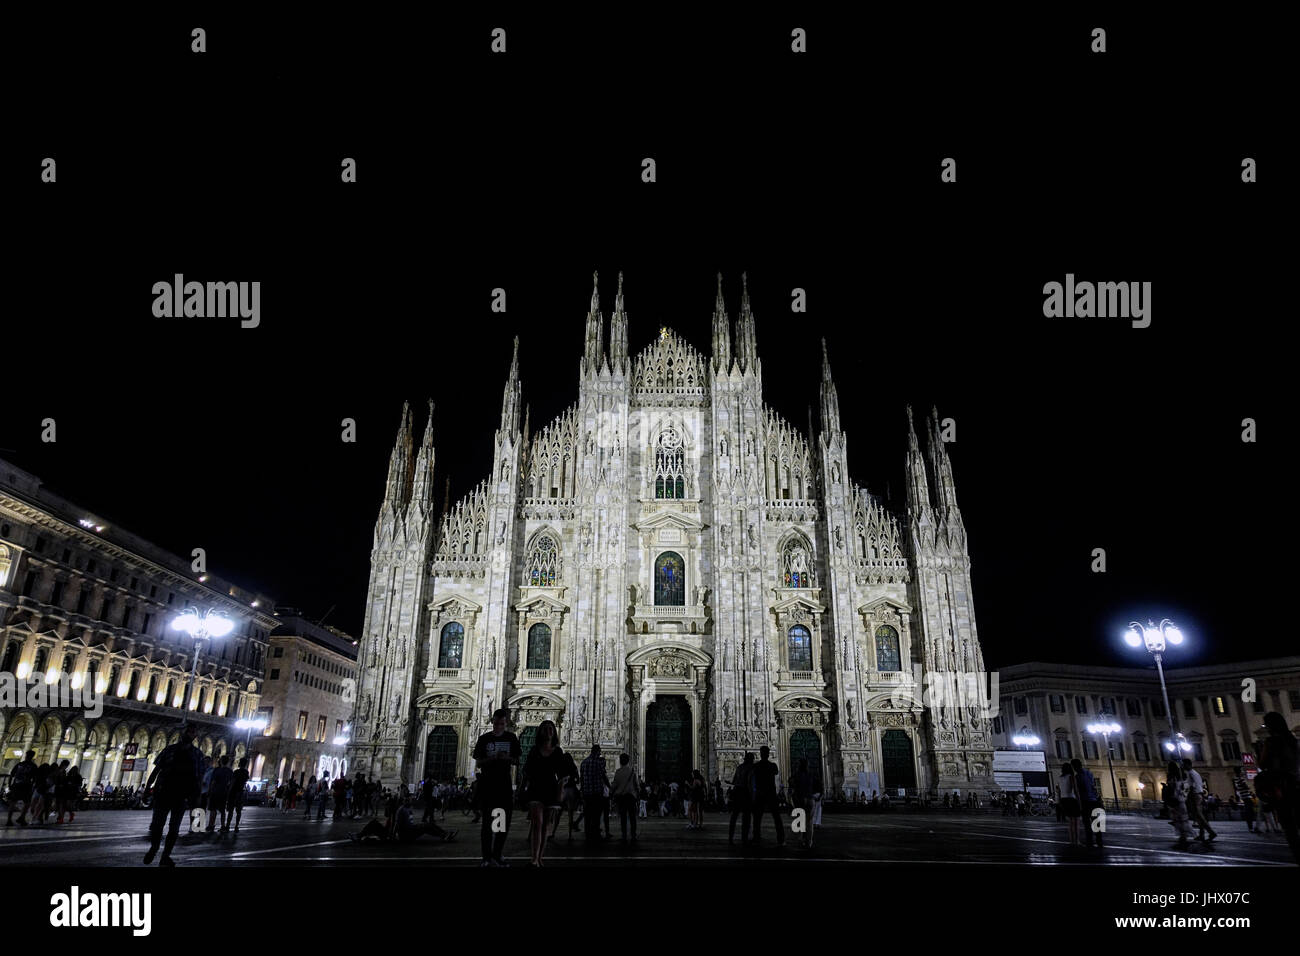 Milano Duomo at night, Italy Stock Photo - Alamy